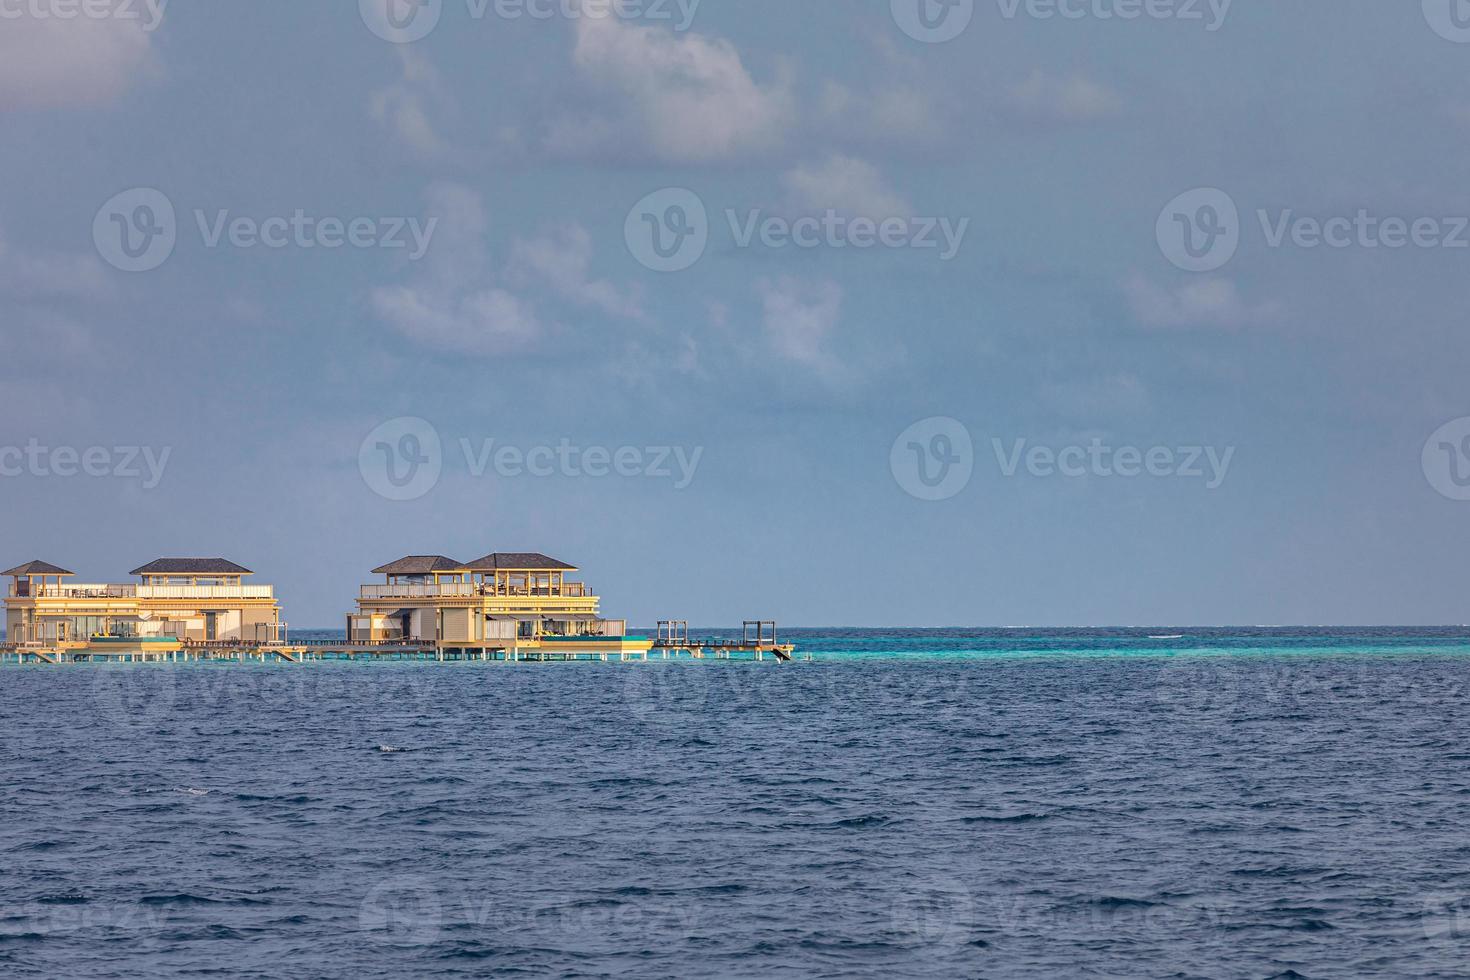 complexe de villas sur l'eau. île des maldives, océan indien. vue depuis le bateau, bungalows exotiques de luxe sur pilotis. concept de voyage et de tourisme d'été, éléments d'architecture sur l'eau photo